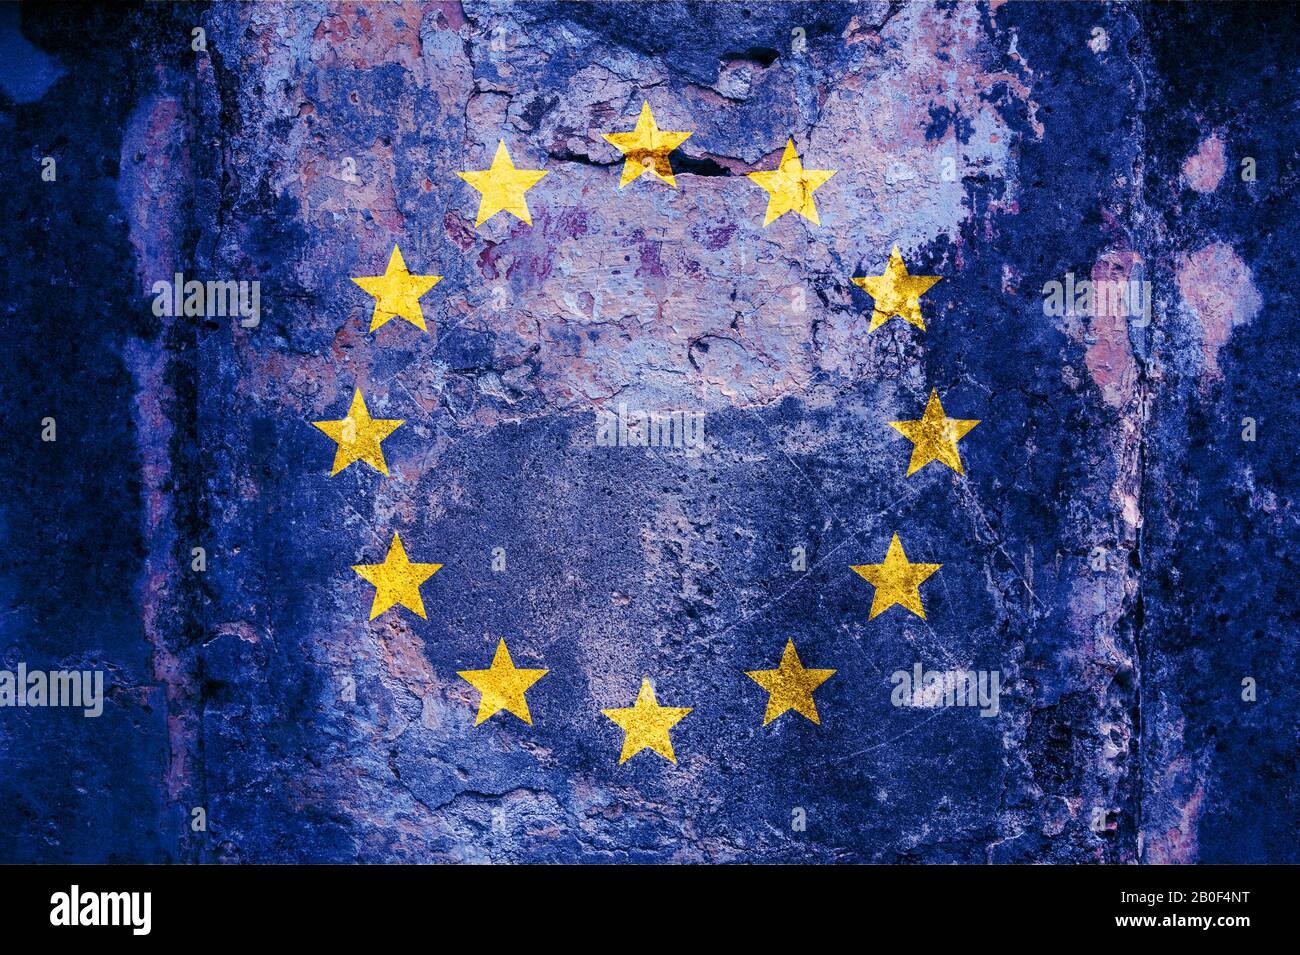 Drapeau de l'UE sur le mur. Drapeau de l'Union européenne peint sur un mur fissuré. Europe, concept culturel européen Banque D'Images